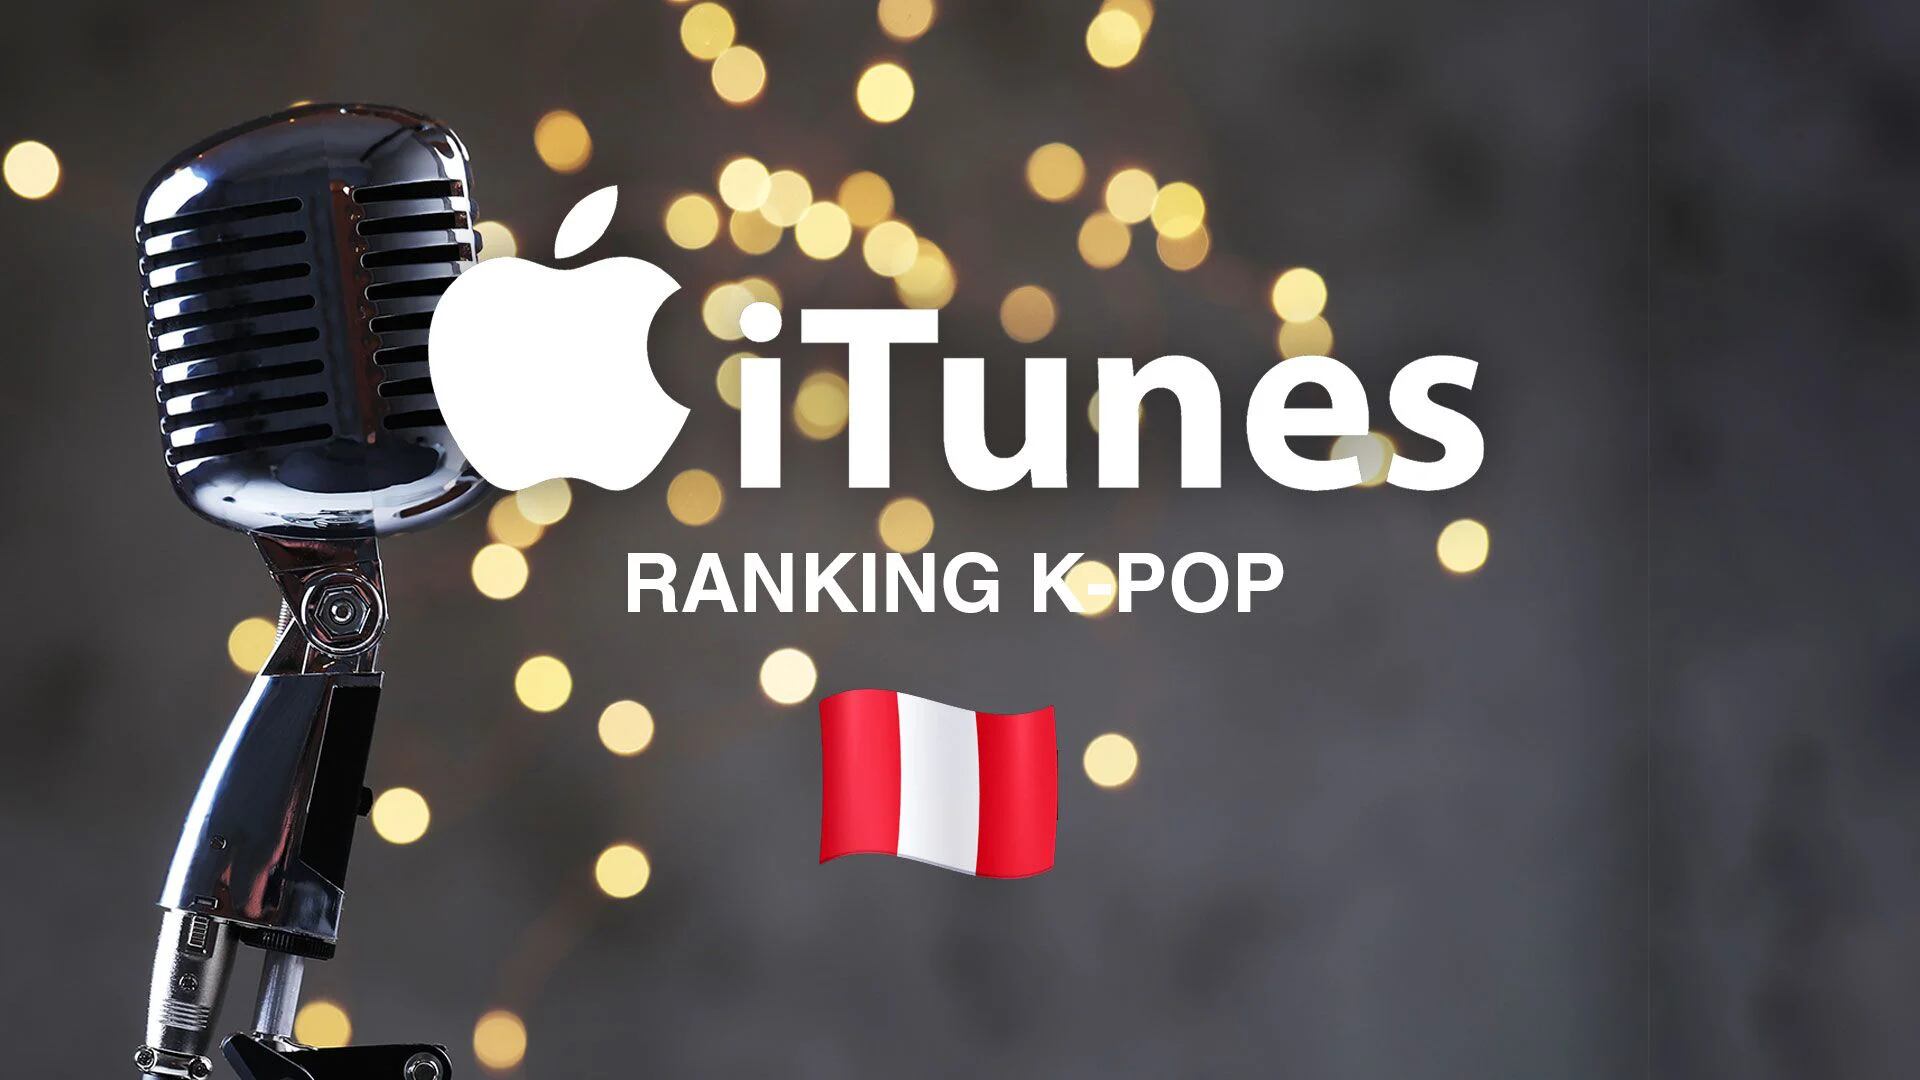 El K-pop muestra su fuerza en Perú: descubre lo más popular en iTunes